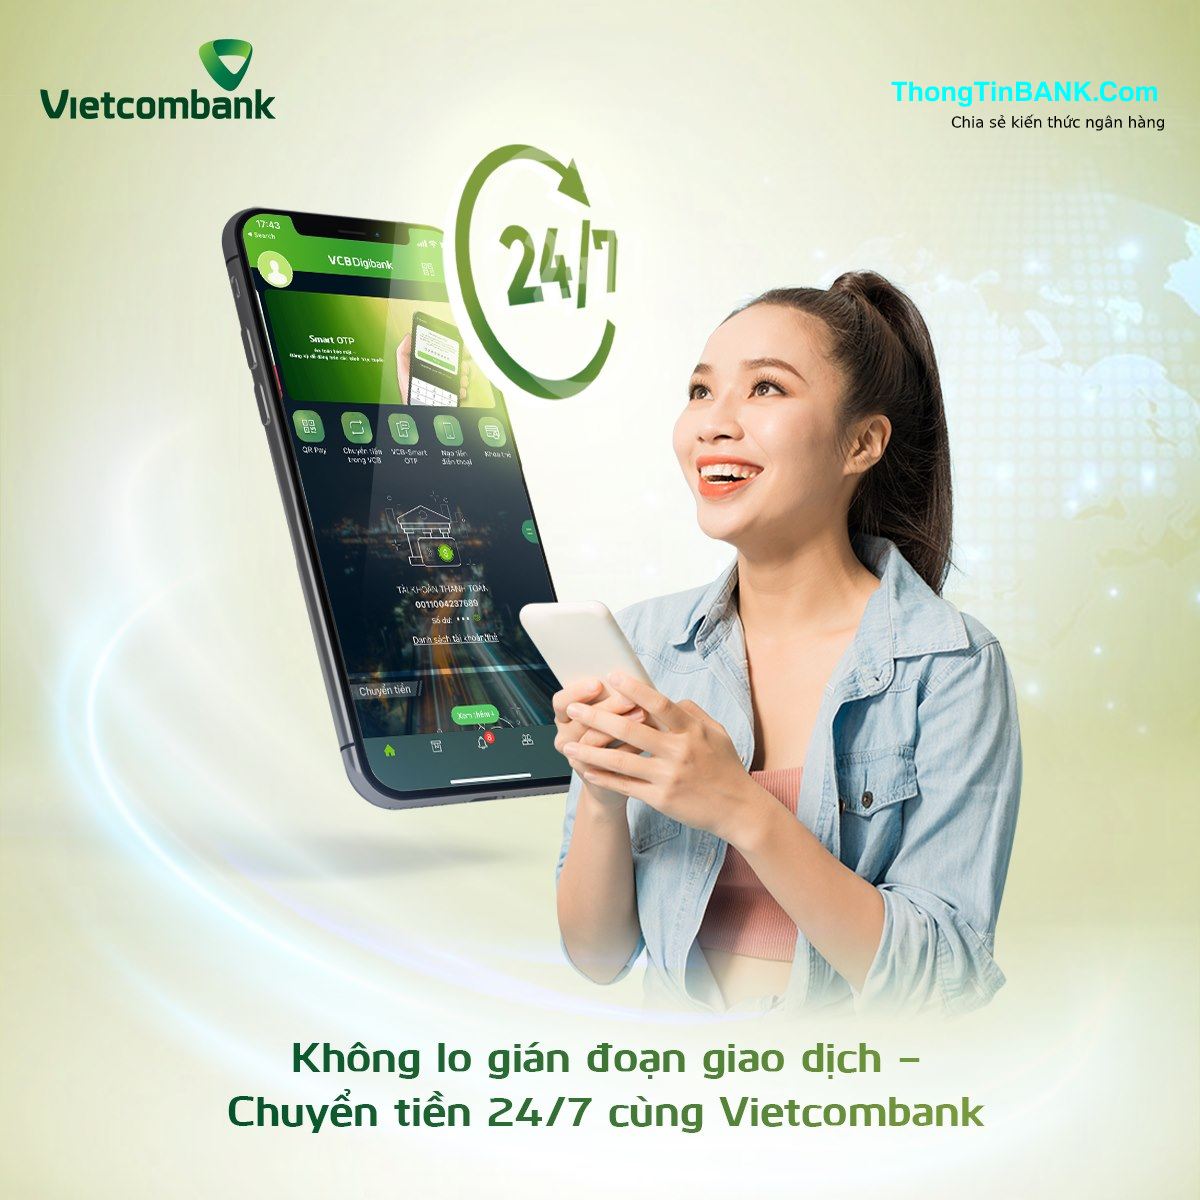 Internet Banking Vietcombank: Hướng Dẫn Tải & Sử Dụng